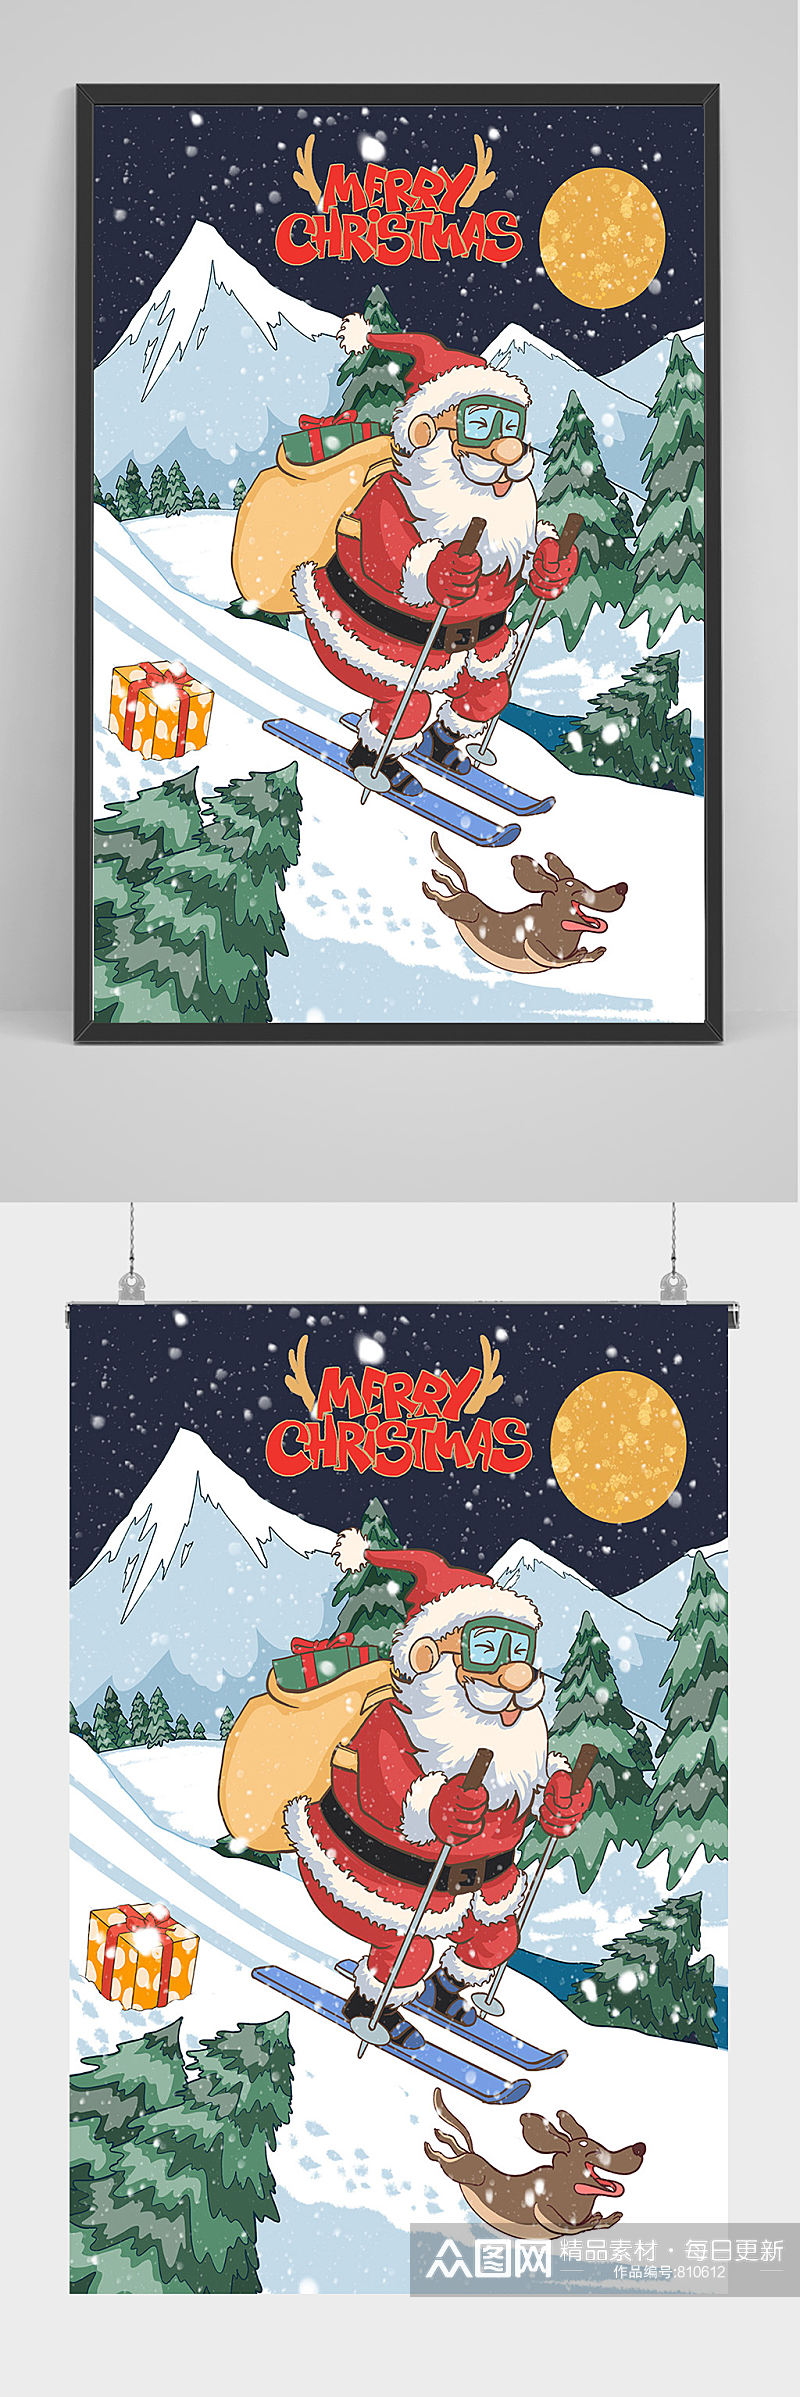 圣诞老人滑雪手绘插画设计素材